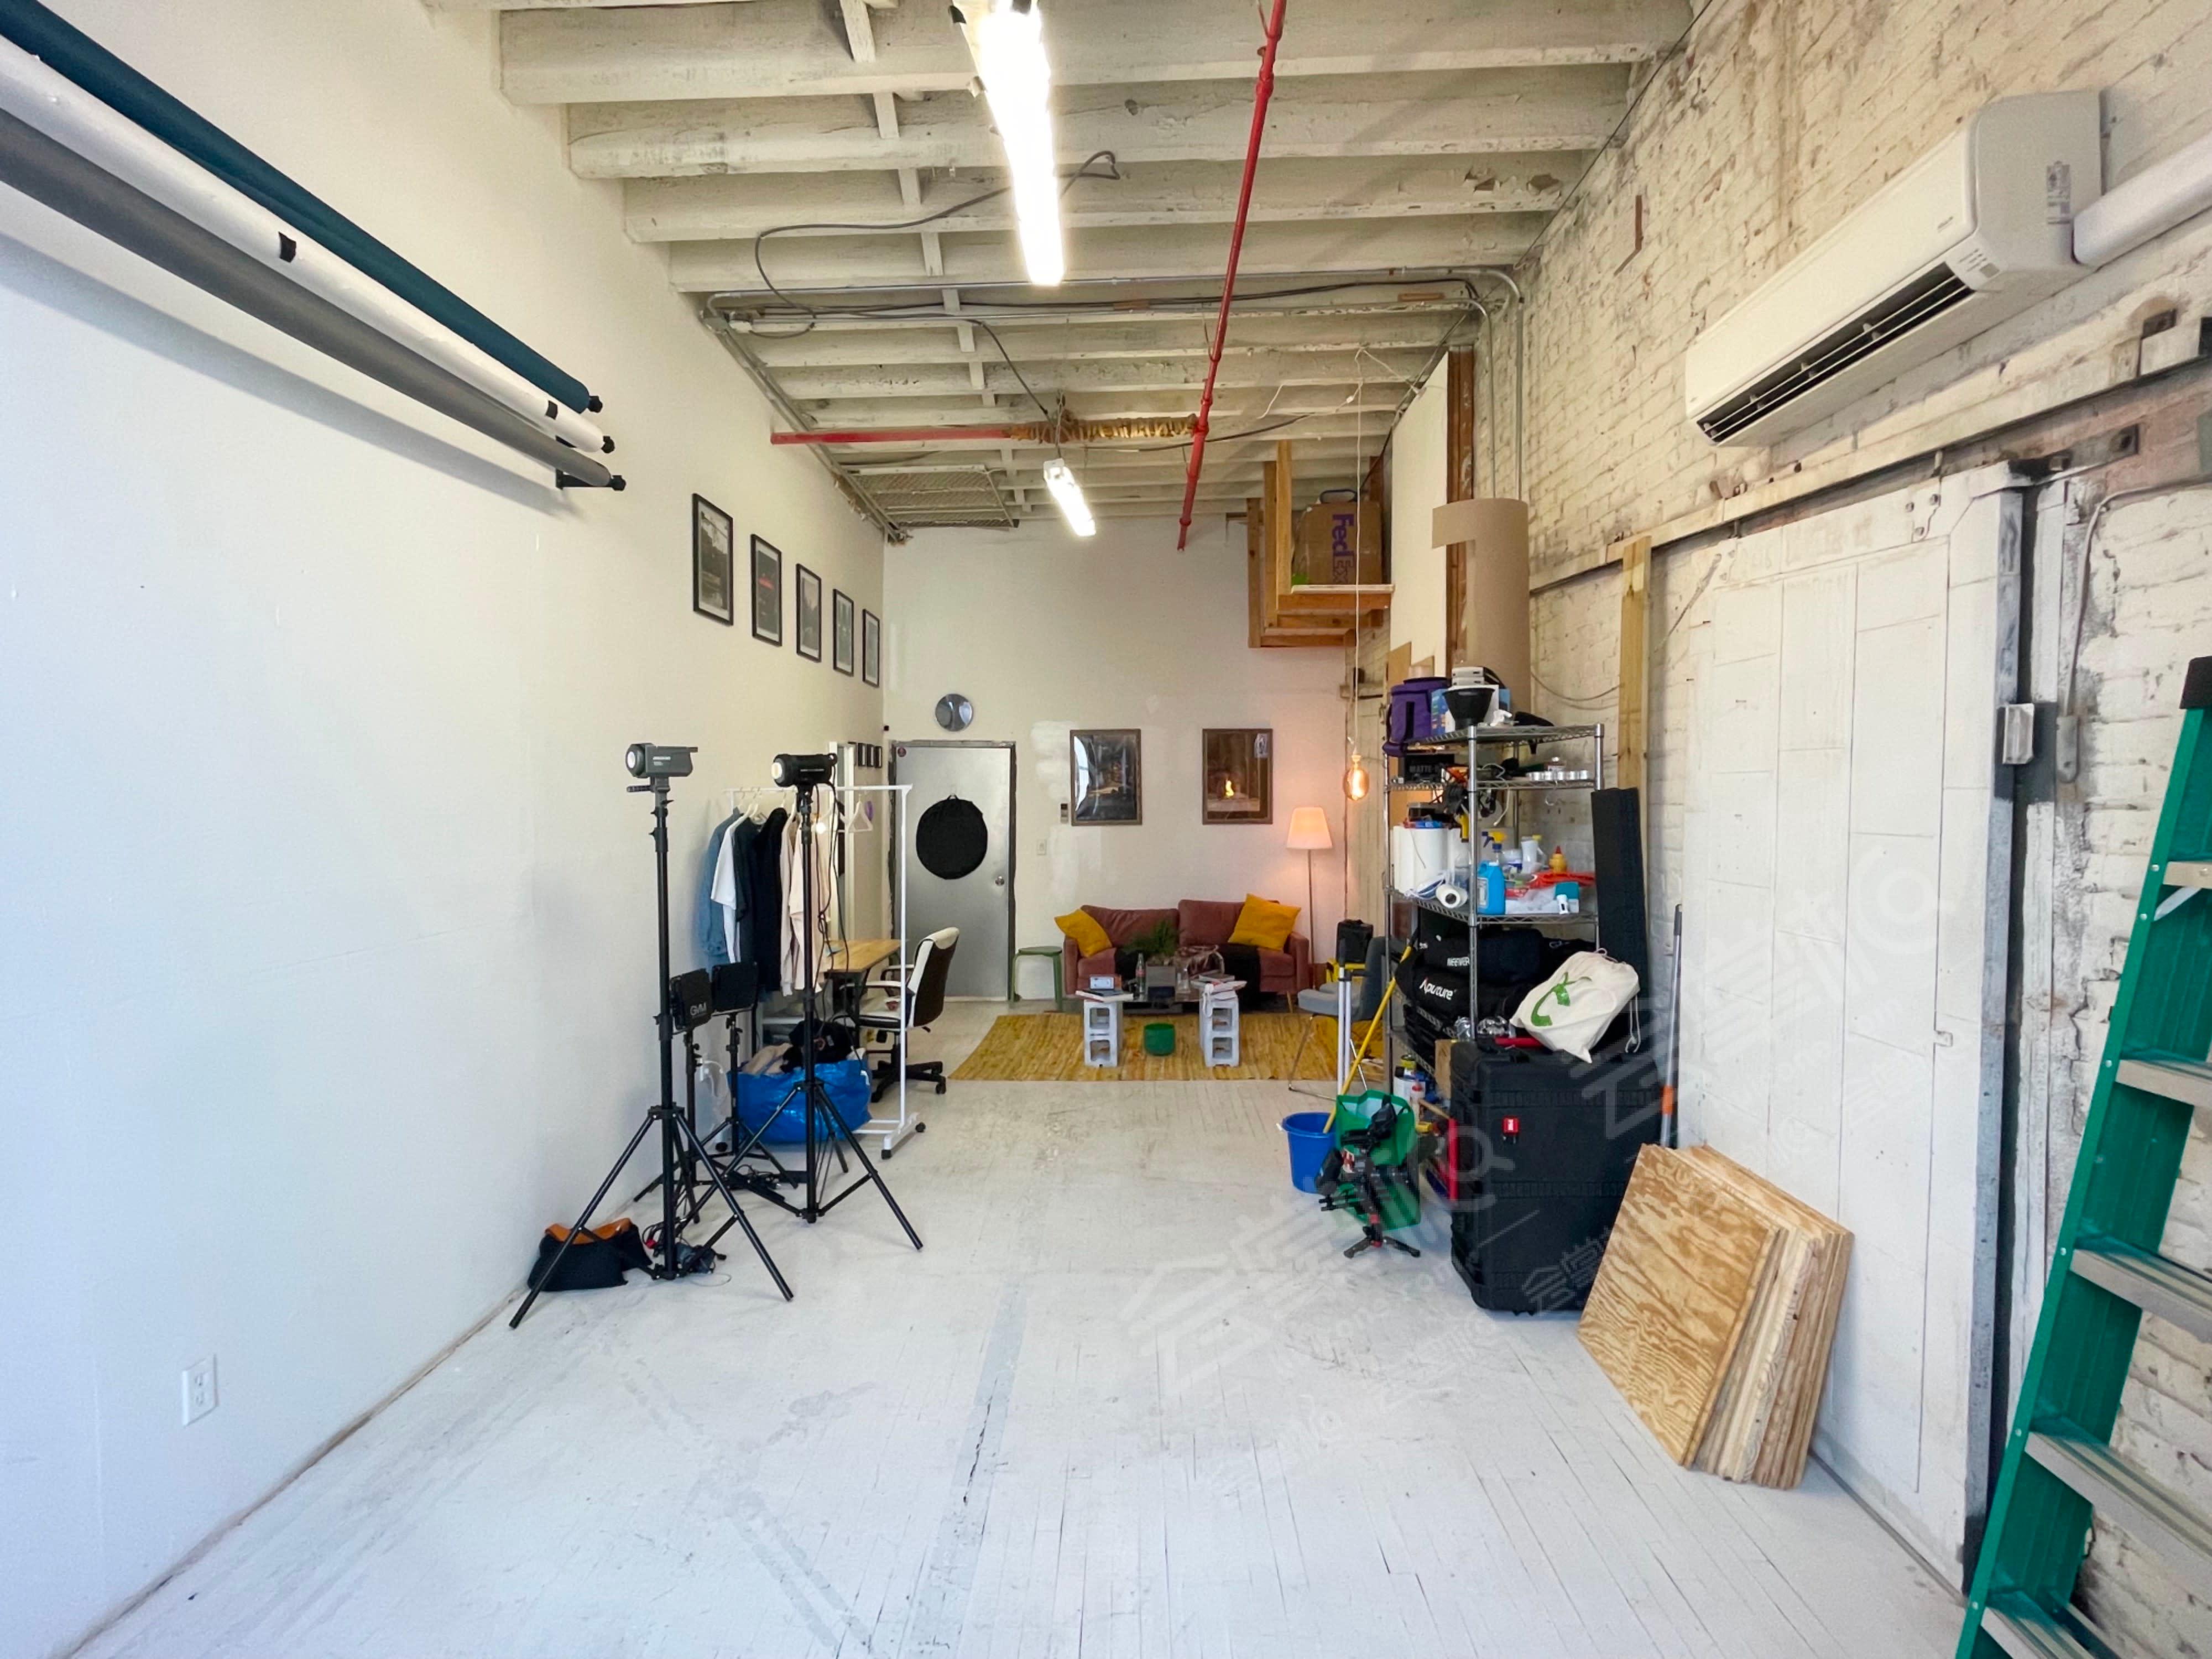 Urban Rustic Studio Space